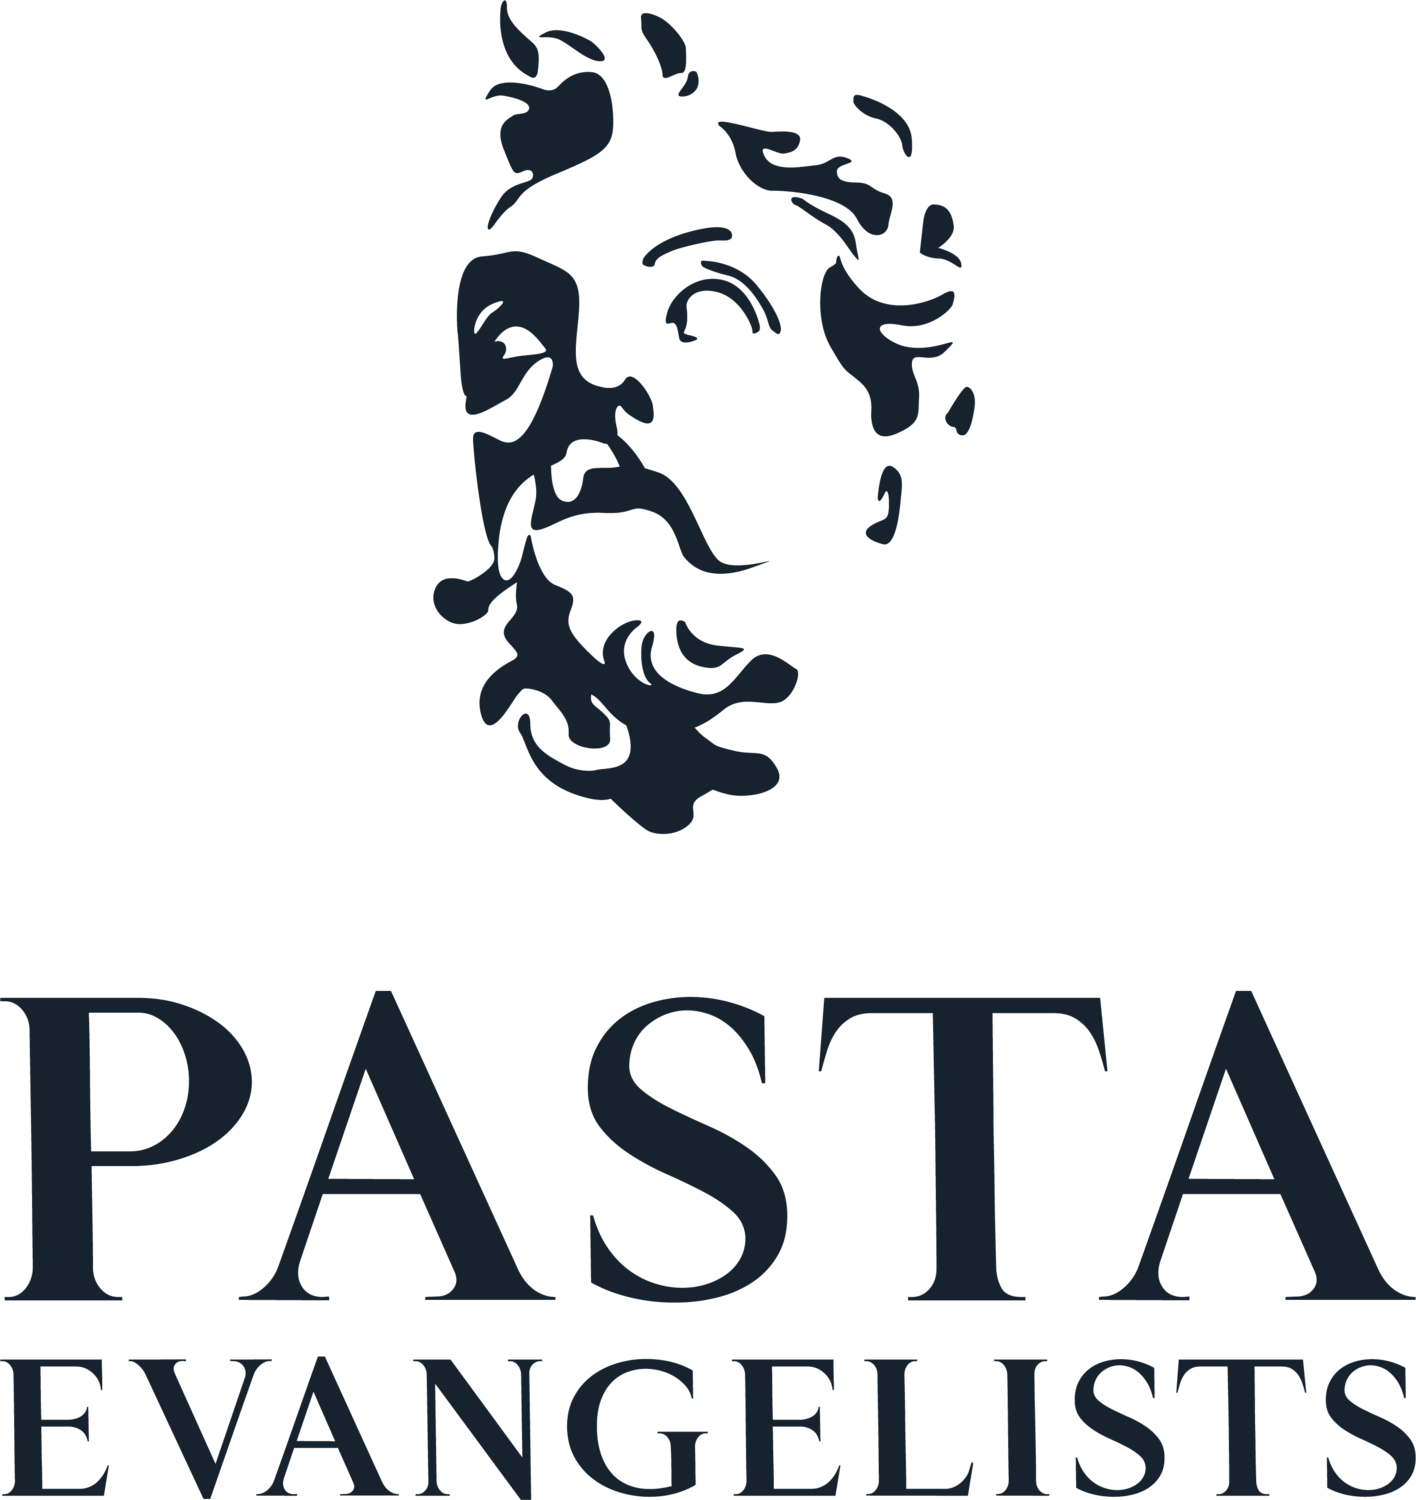 Pasta Evangelist